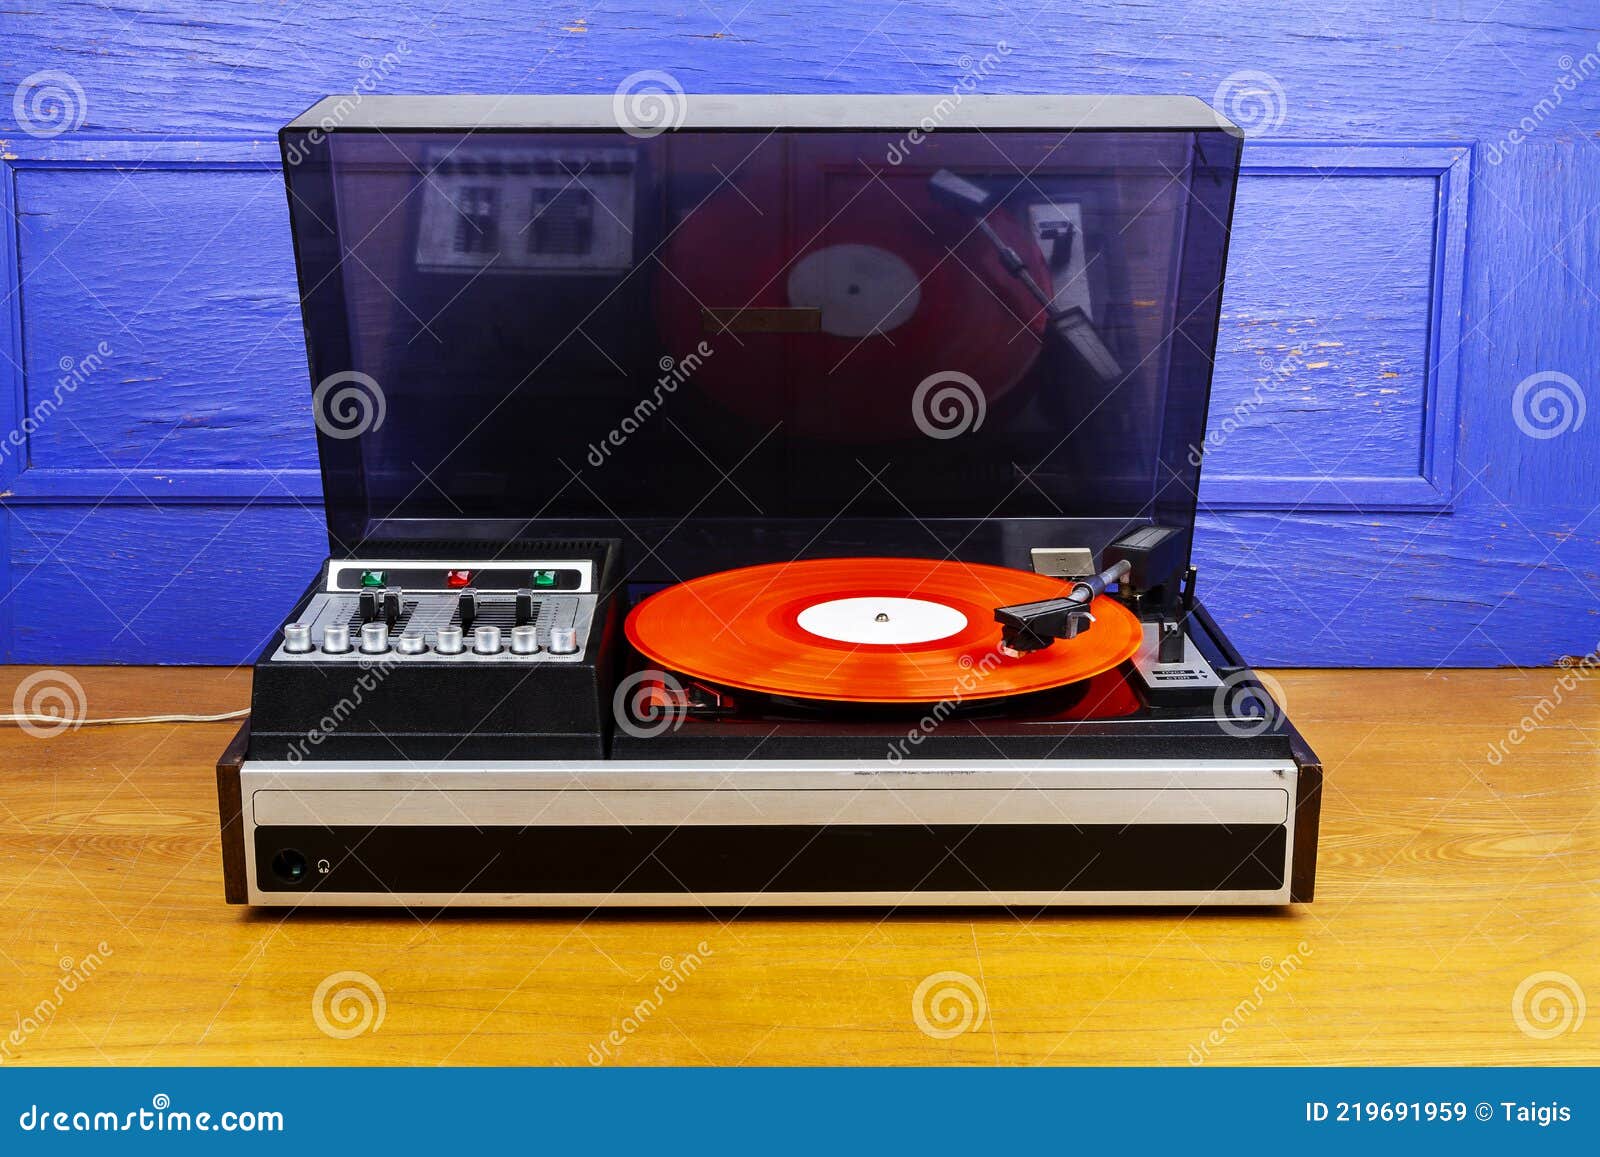 https://thumbs.dreamstime.com/z/vintage-tocadiscos-de-vinilo-reproductor-discos-con-rojo-giradiscos-grabador-en-la-mesa-por-pared-azul-219691959.jpg